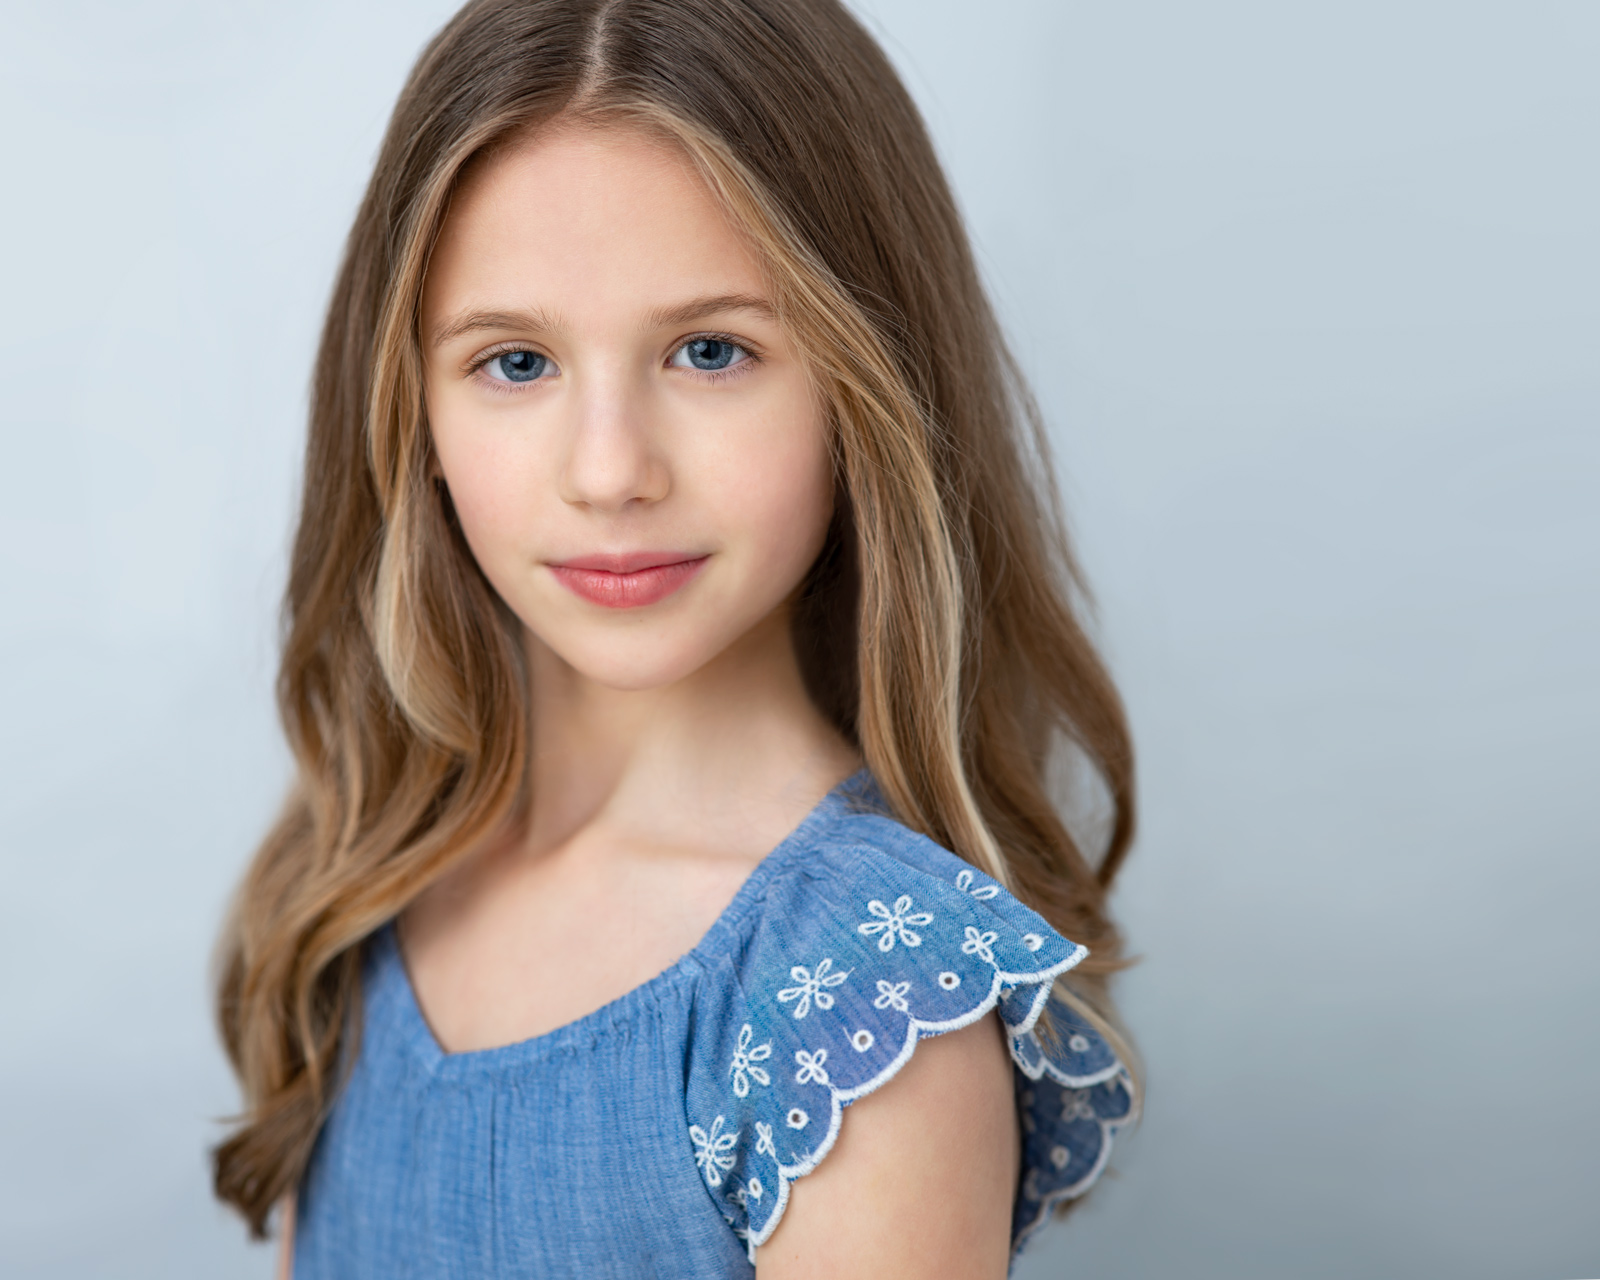 girl wearing a blue dress in child portrait